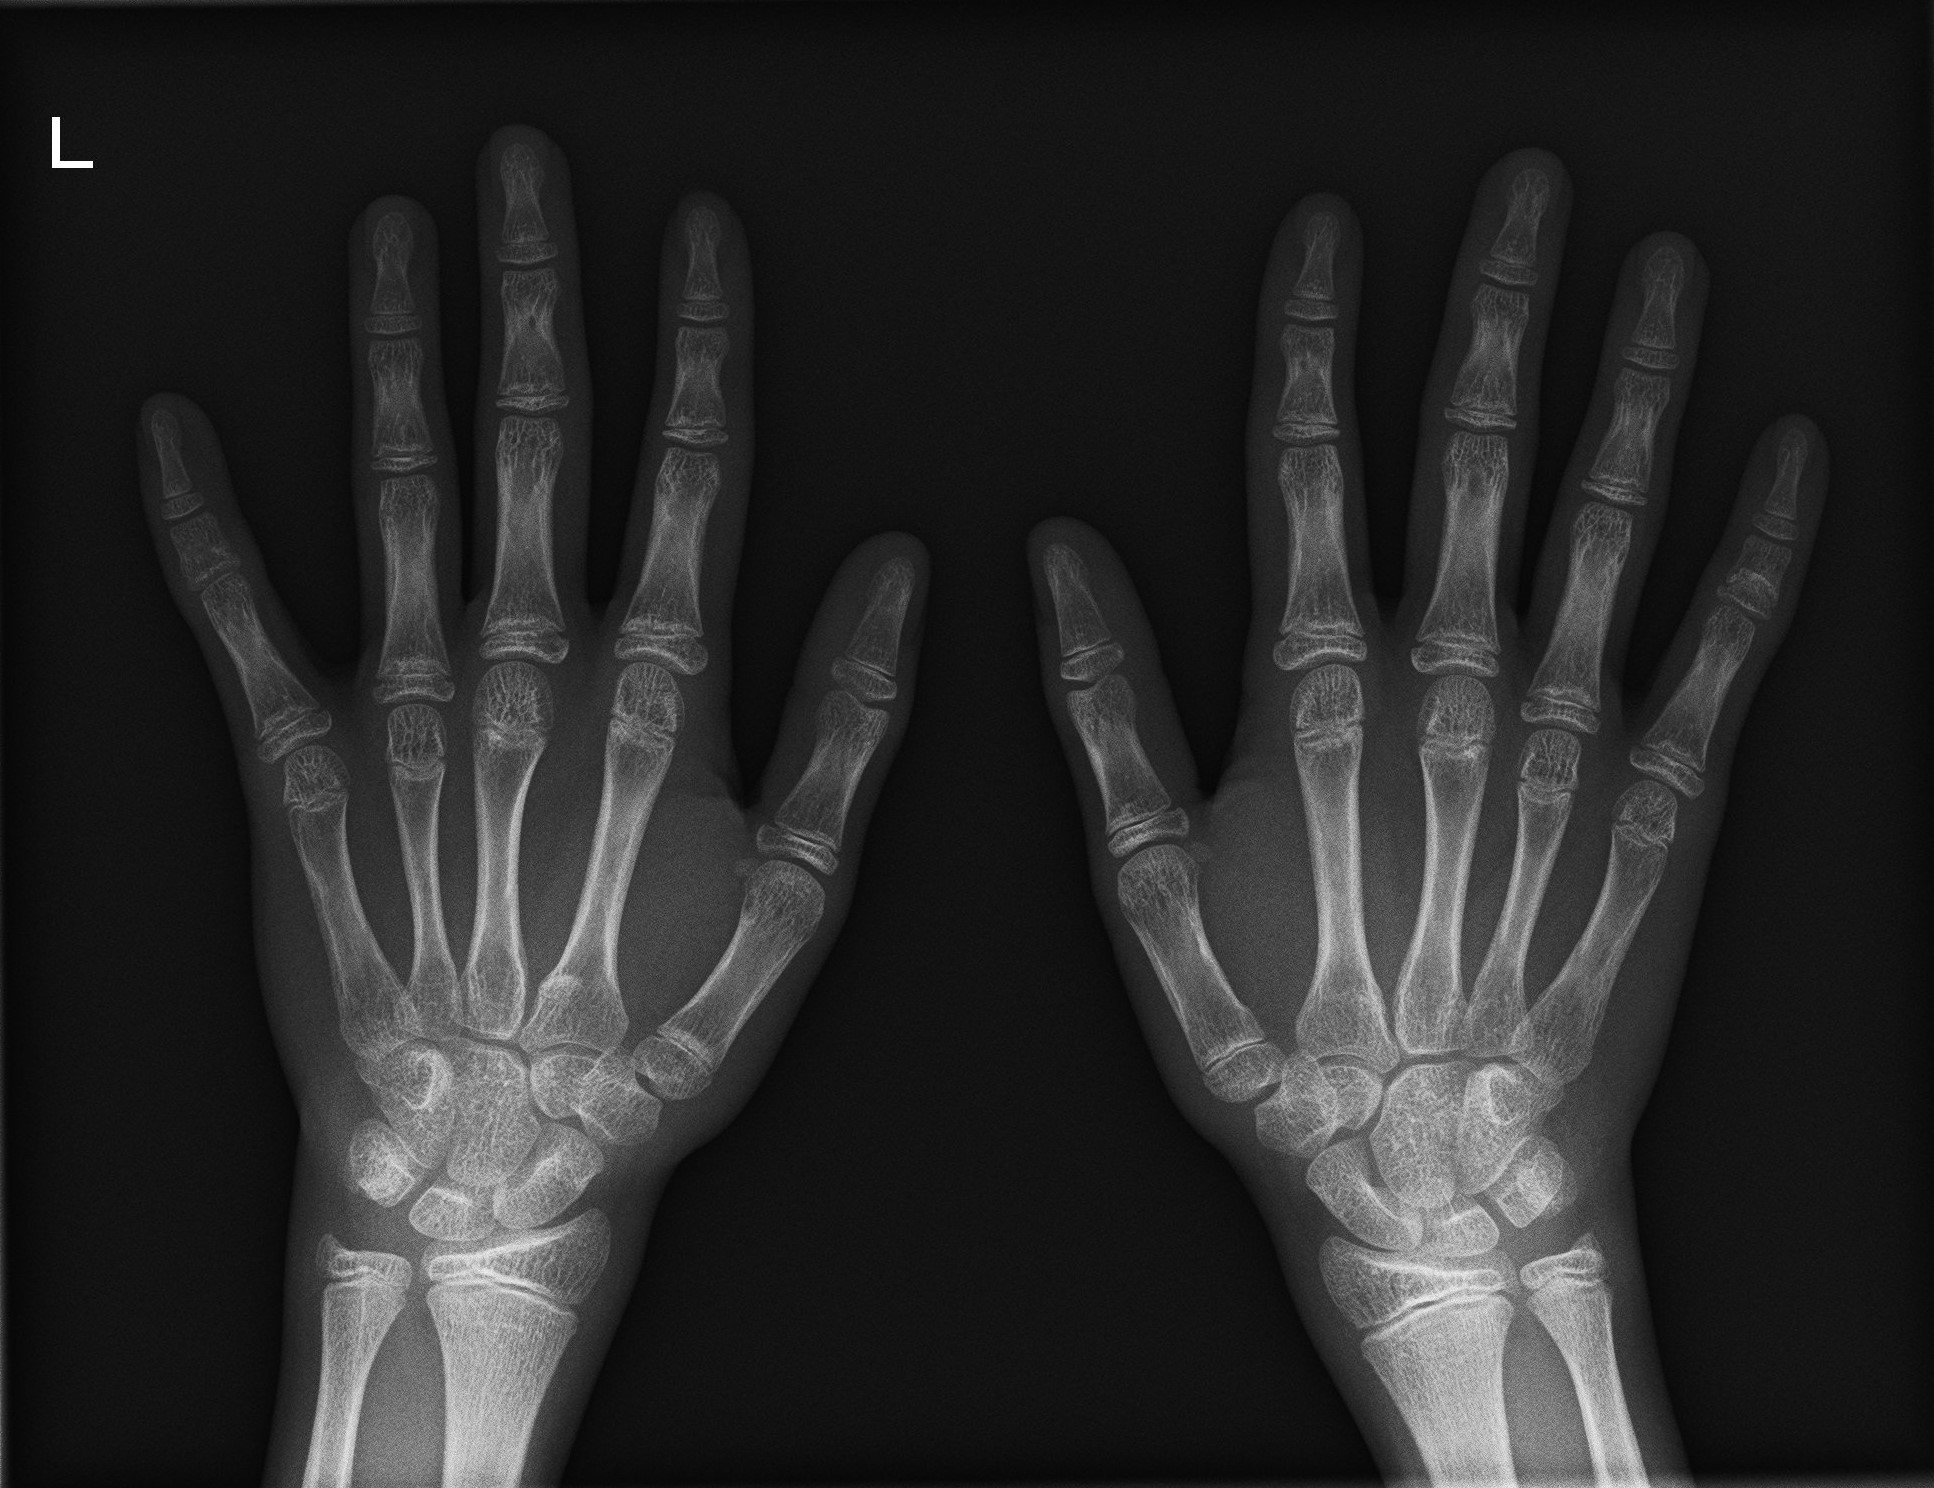 骨年齢評価の手根骨撮影